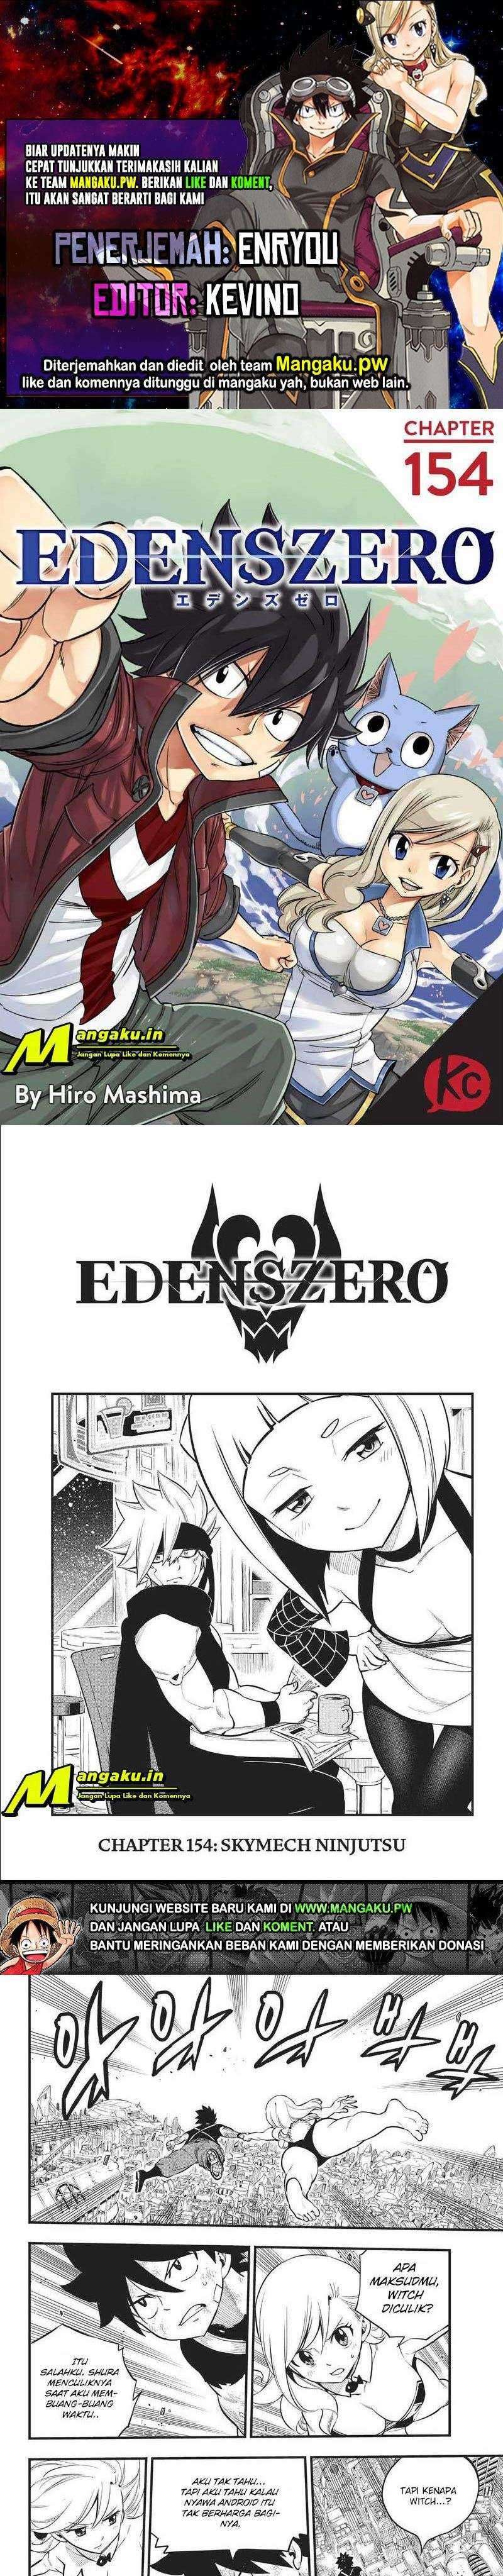 Eden’s Zero Chapter 154